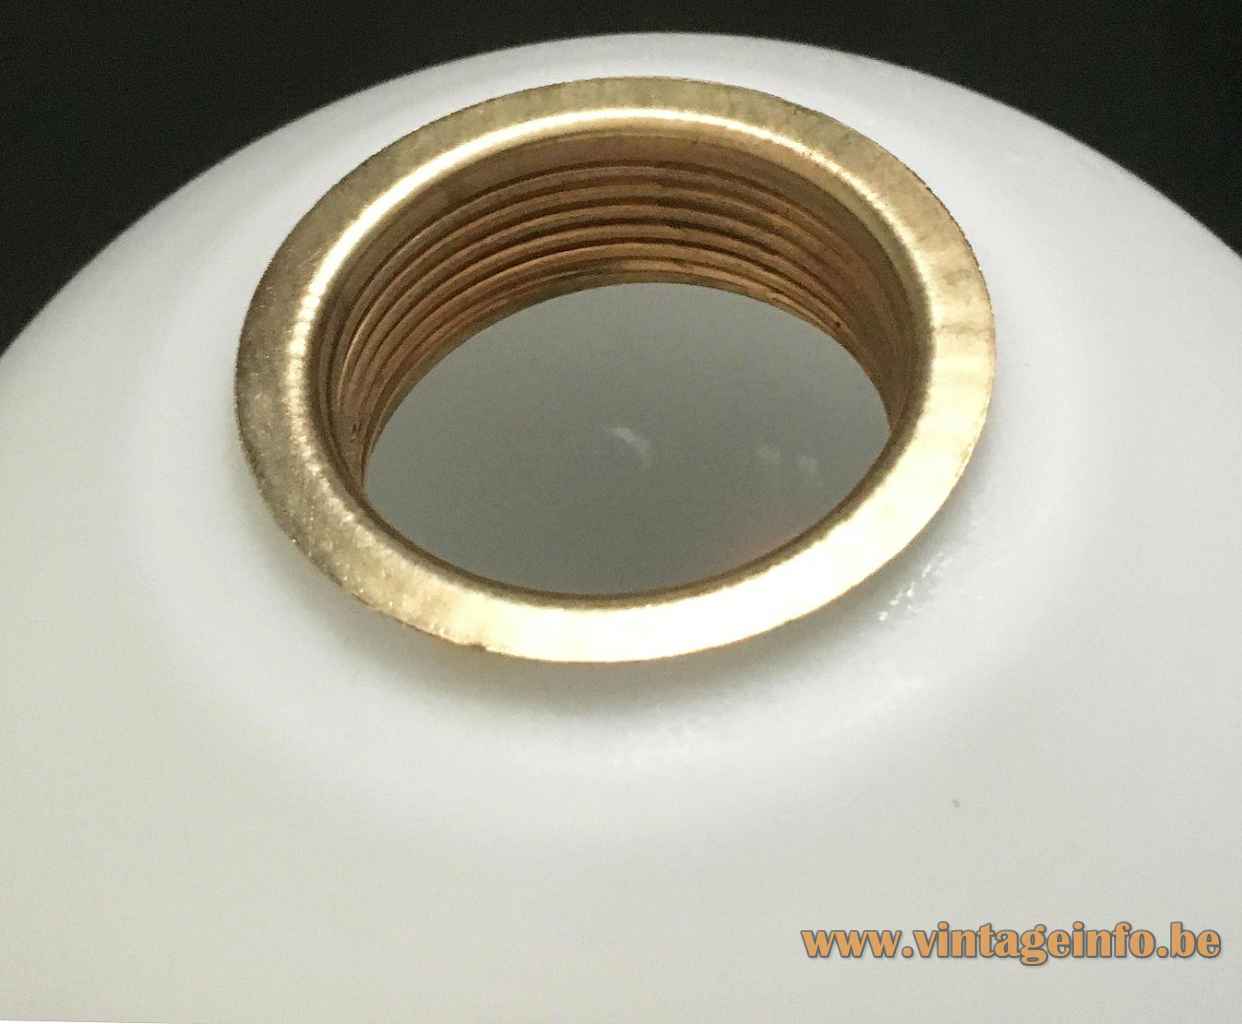 Temde white globes floor lamp opal glass lampshade brass ring Switzerland 1960s 1970s E14 socket